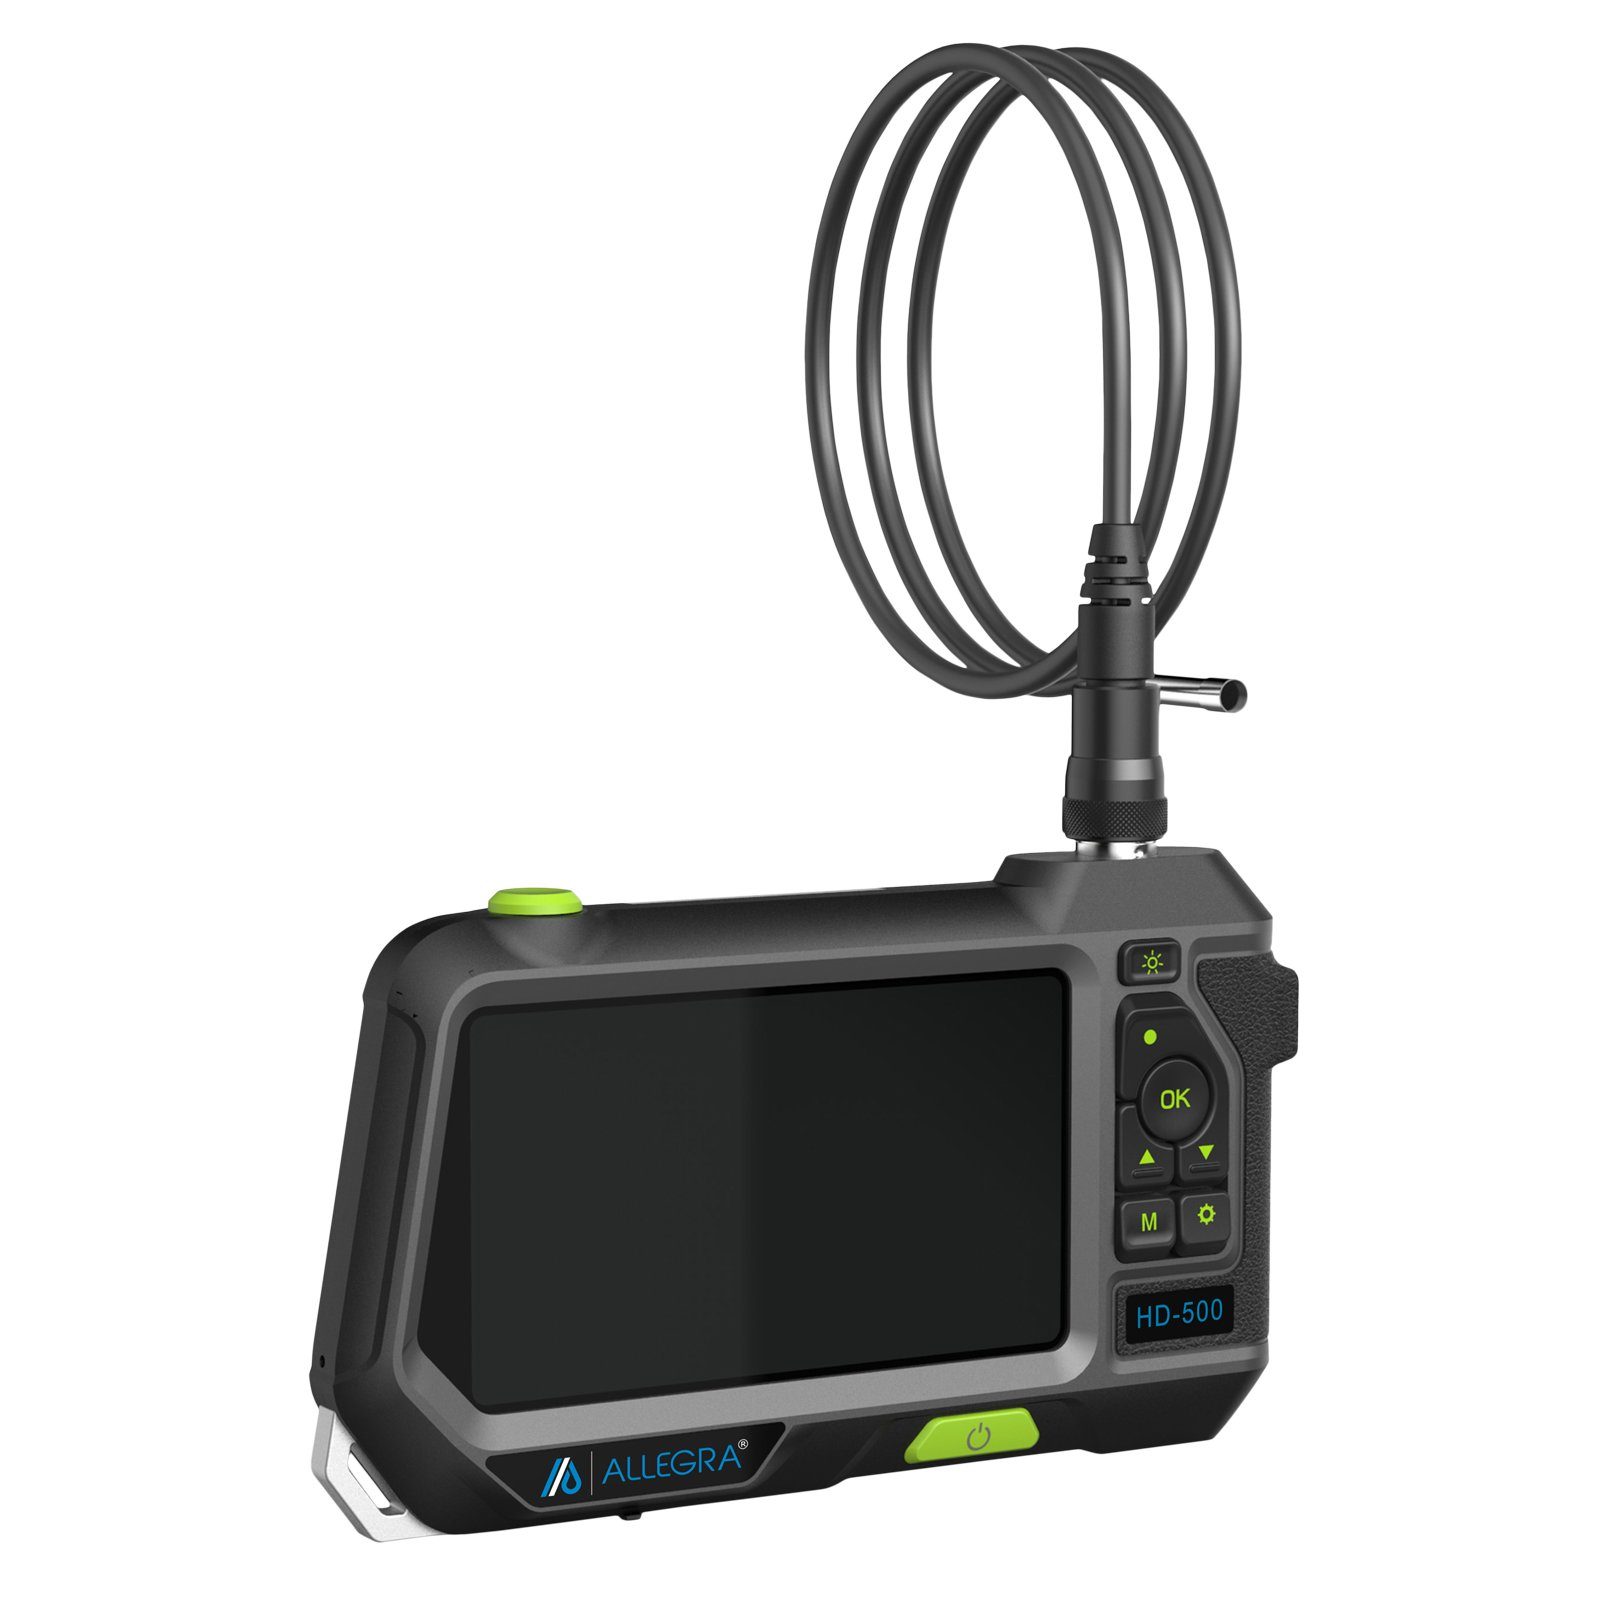 Dualkopf - HD-500 Endoskop ALLEGRA ALLEGRA Kamerasonde mit 3m Inspektionskamera